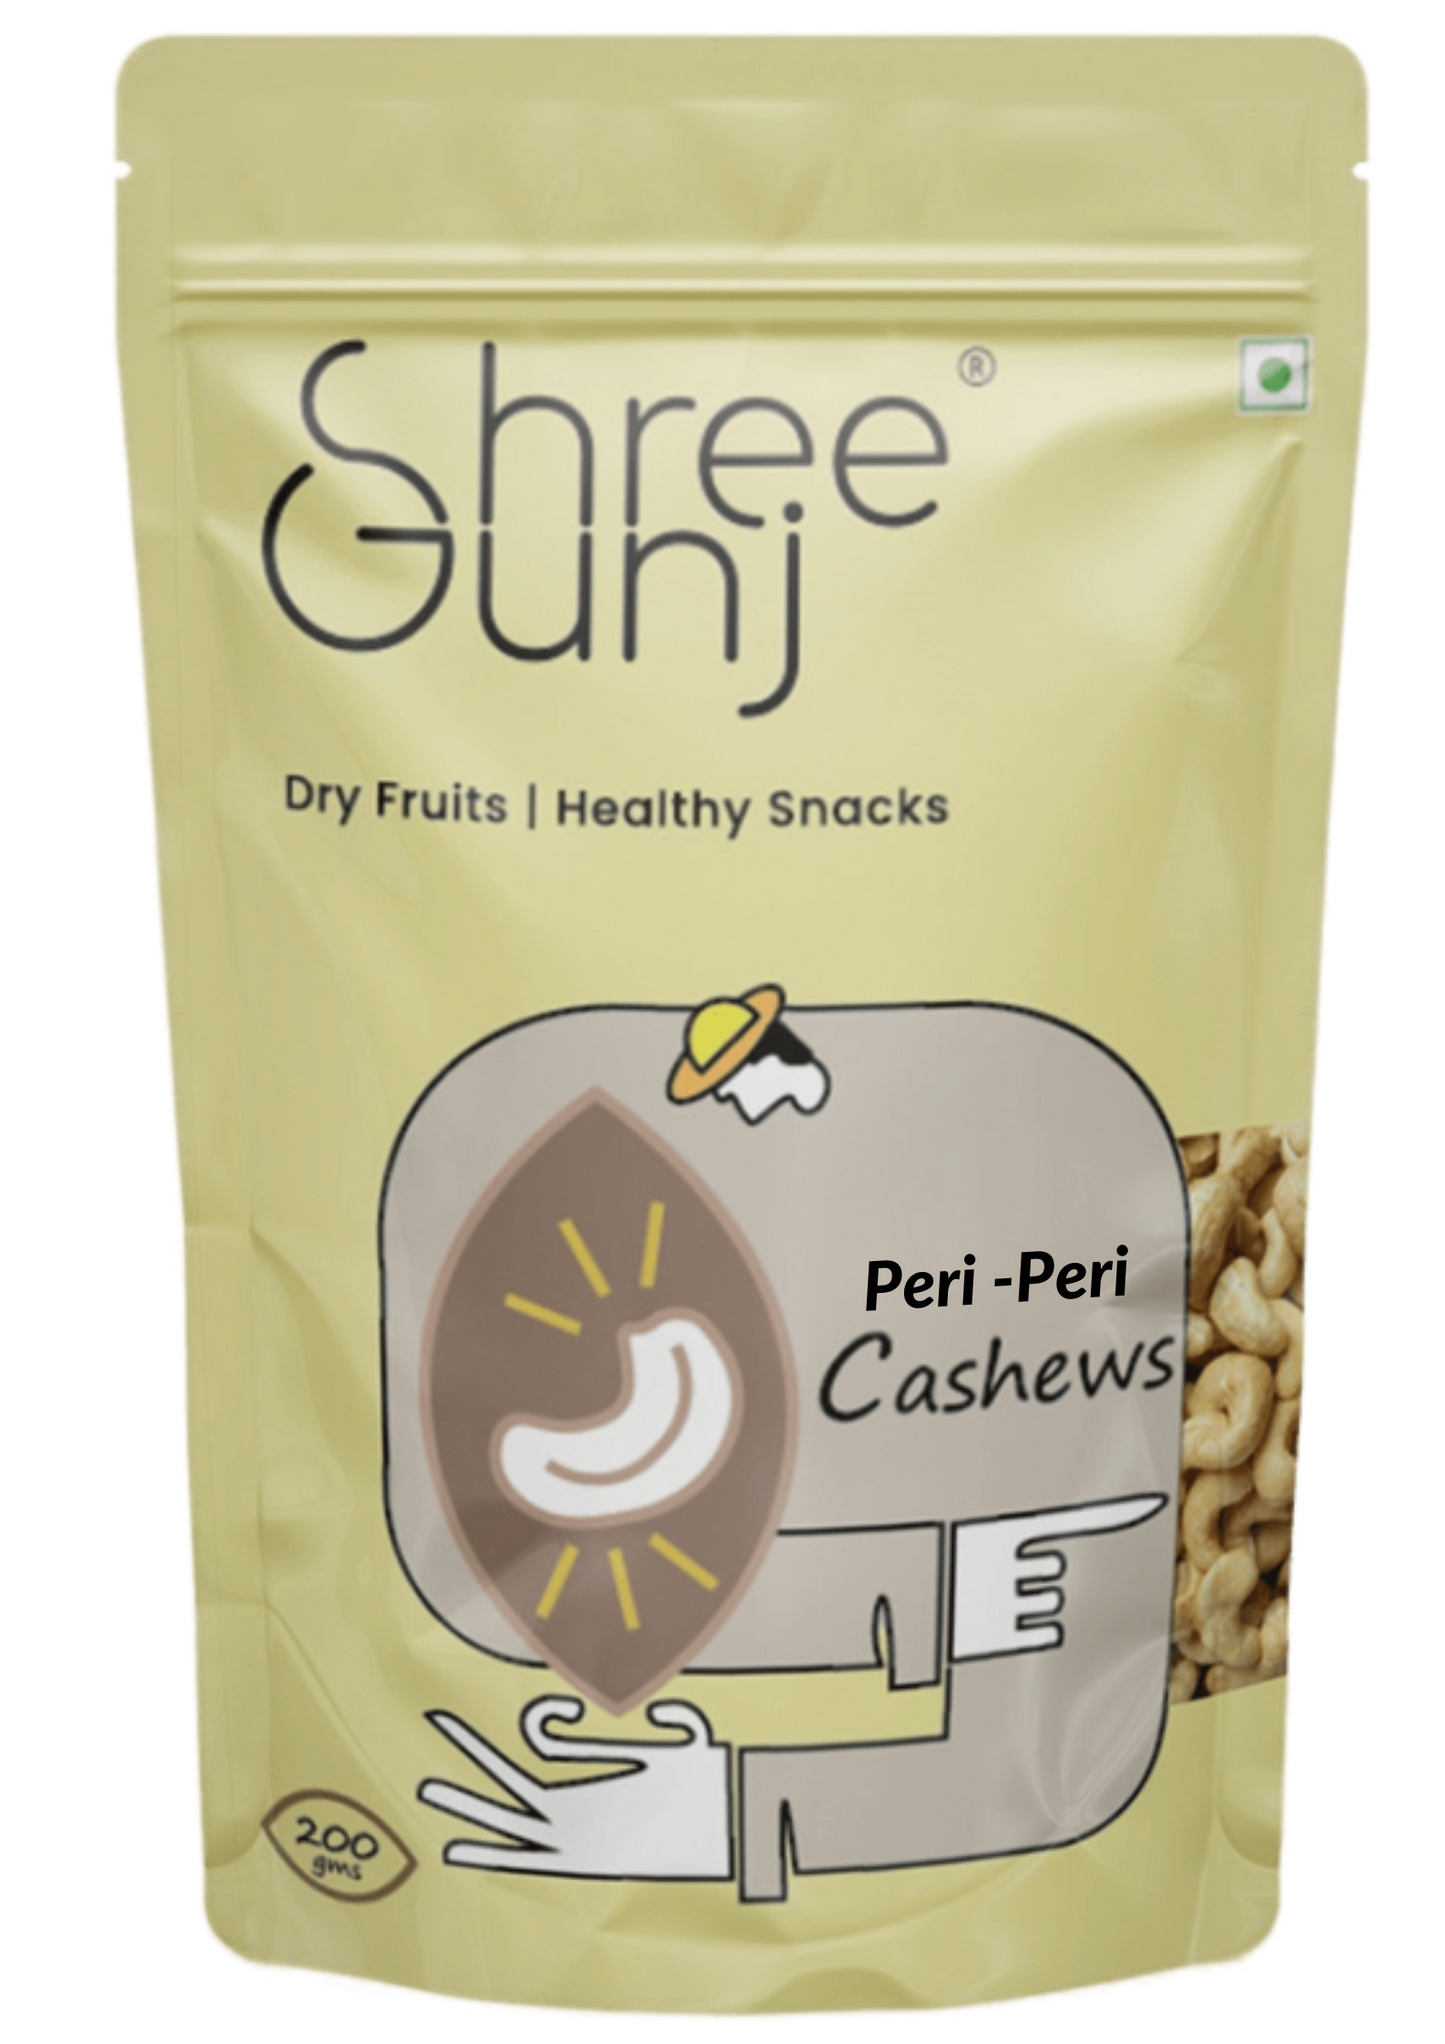 Peri-Peri Flavored Cashew Nuts